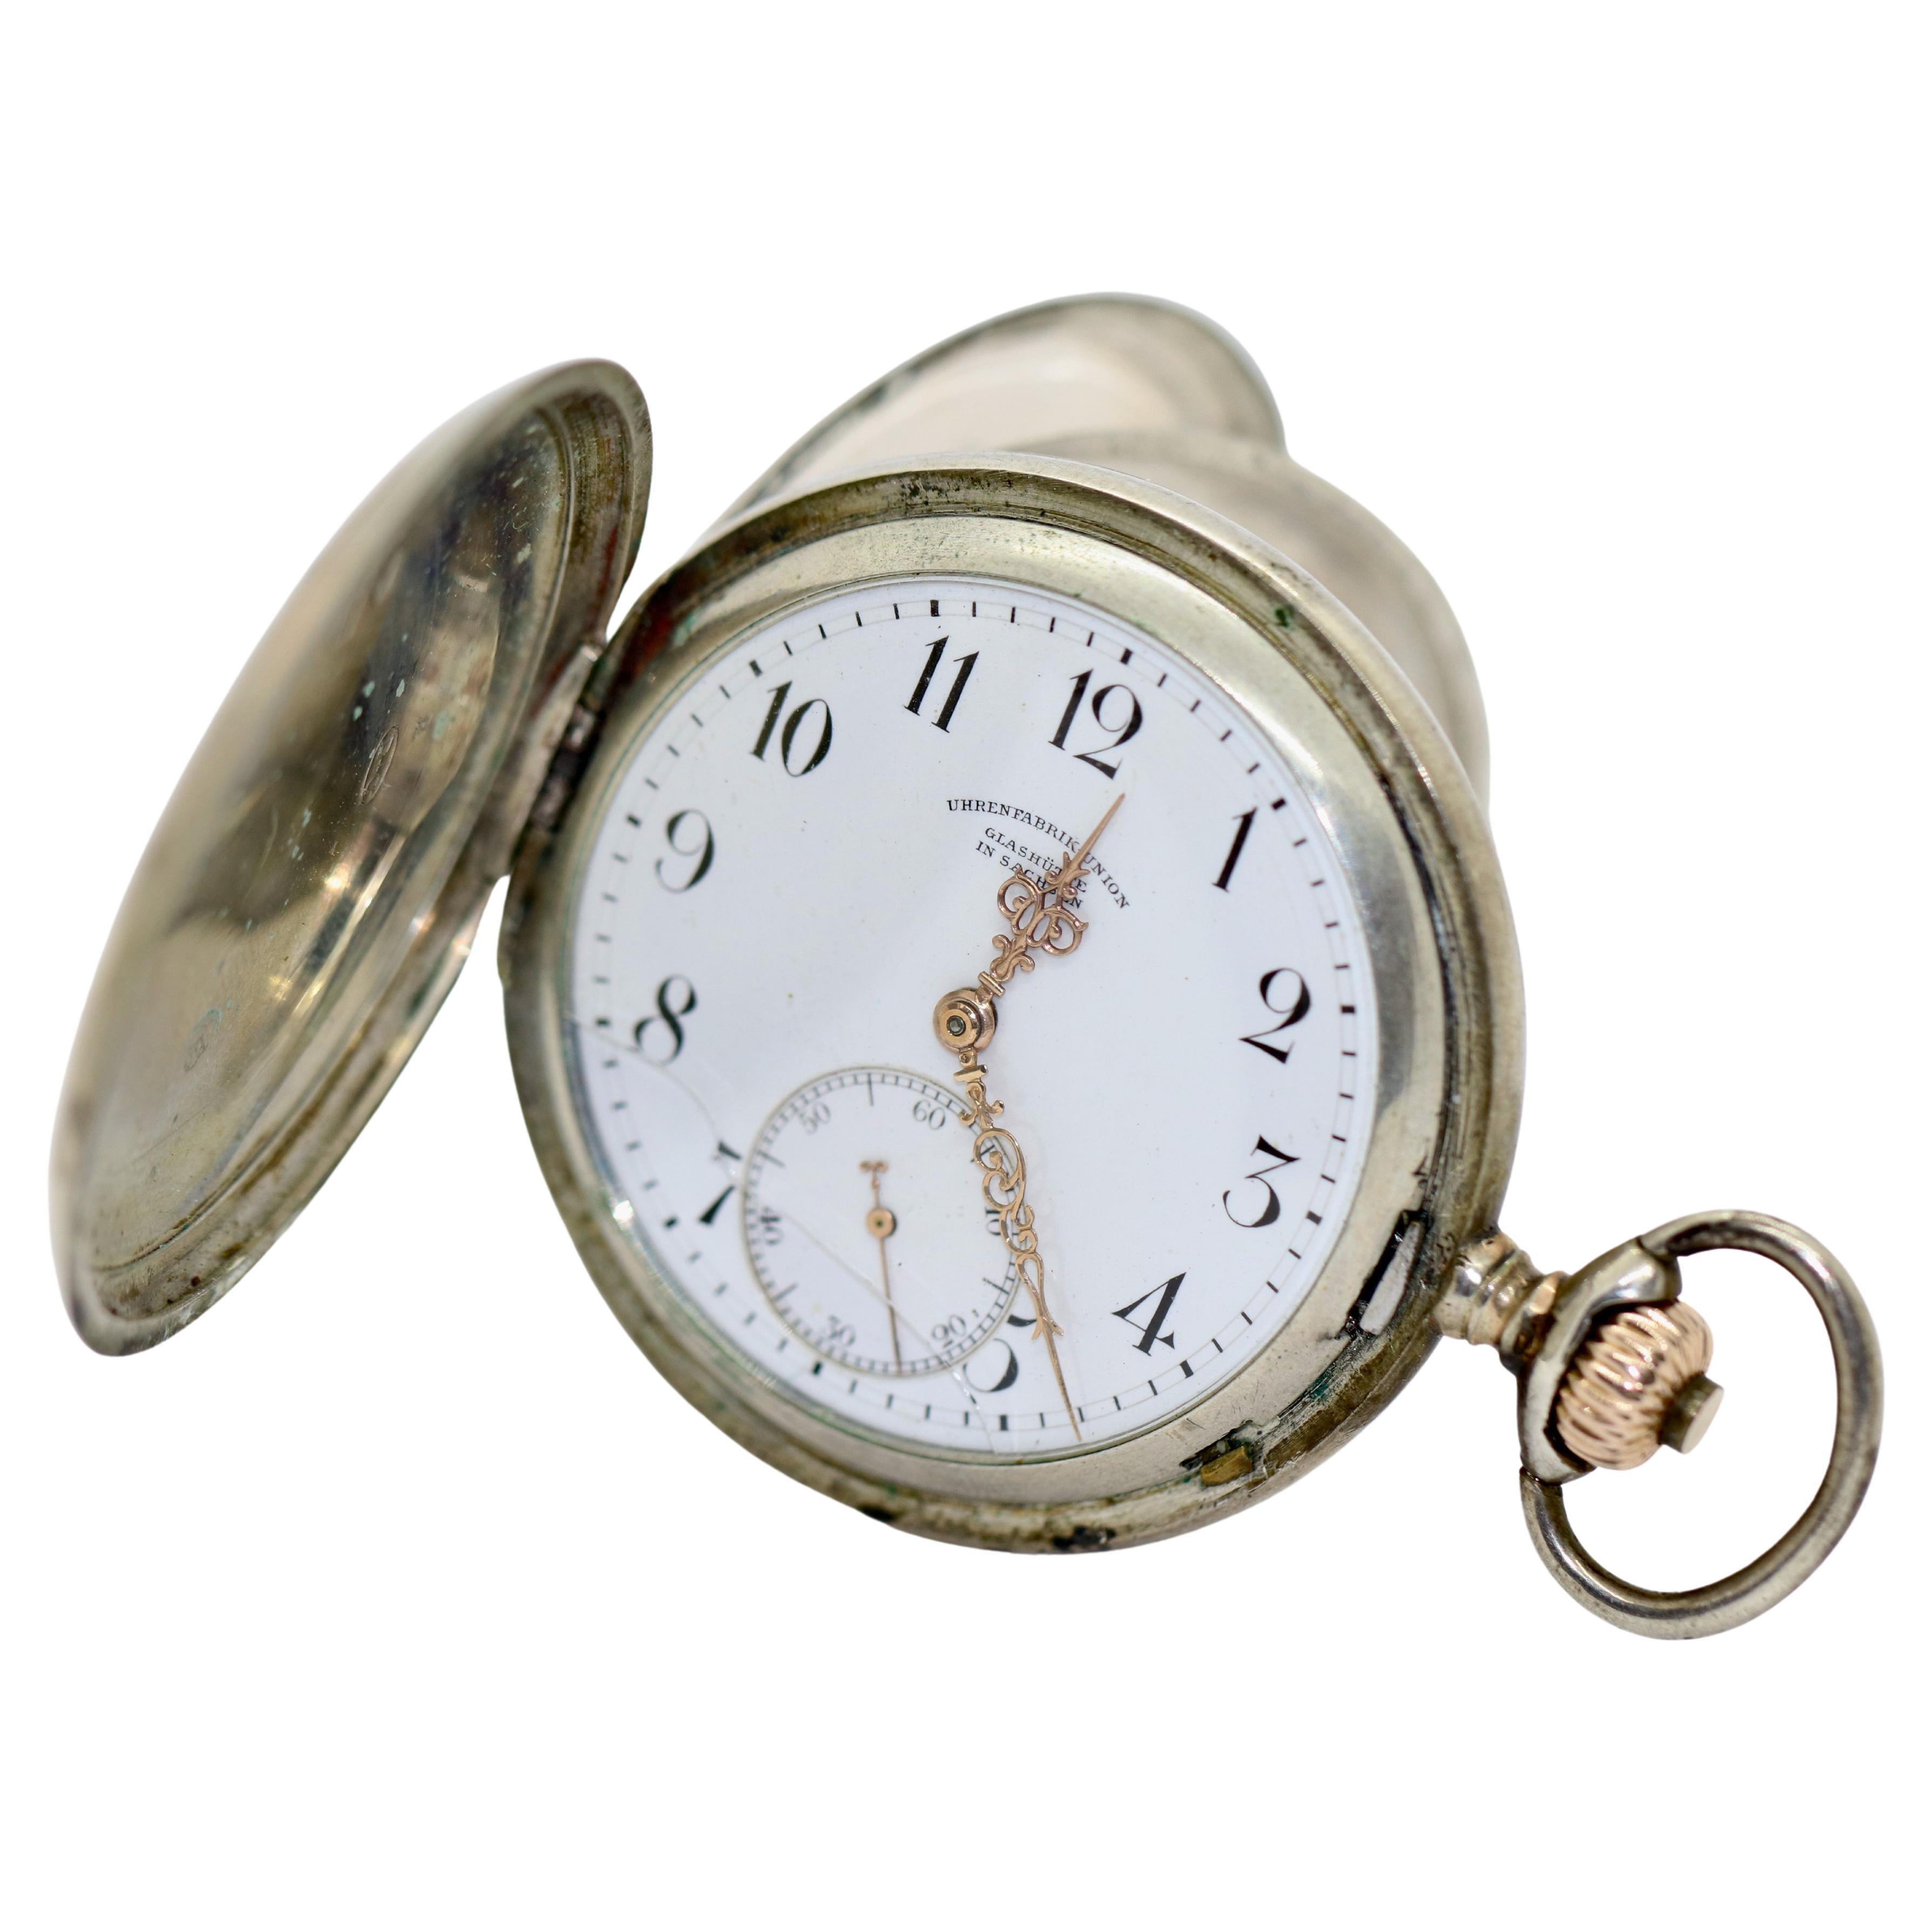 Taschenuhr aus Silber von Dürrstein & Co., Uhrenfabrik Union, Etui